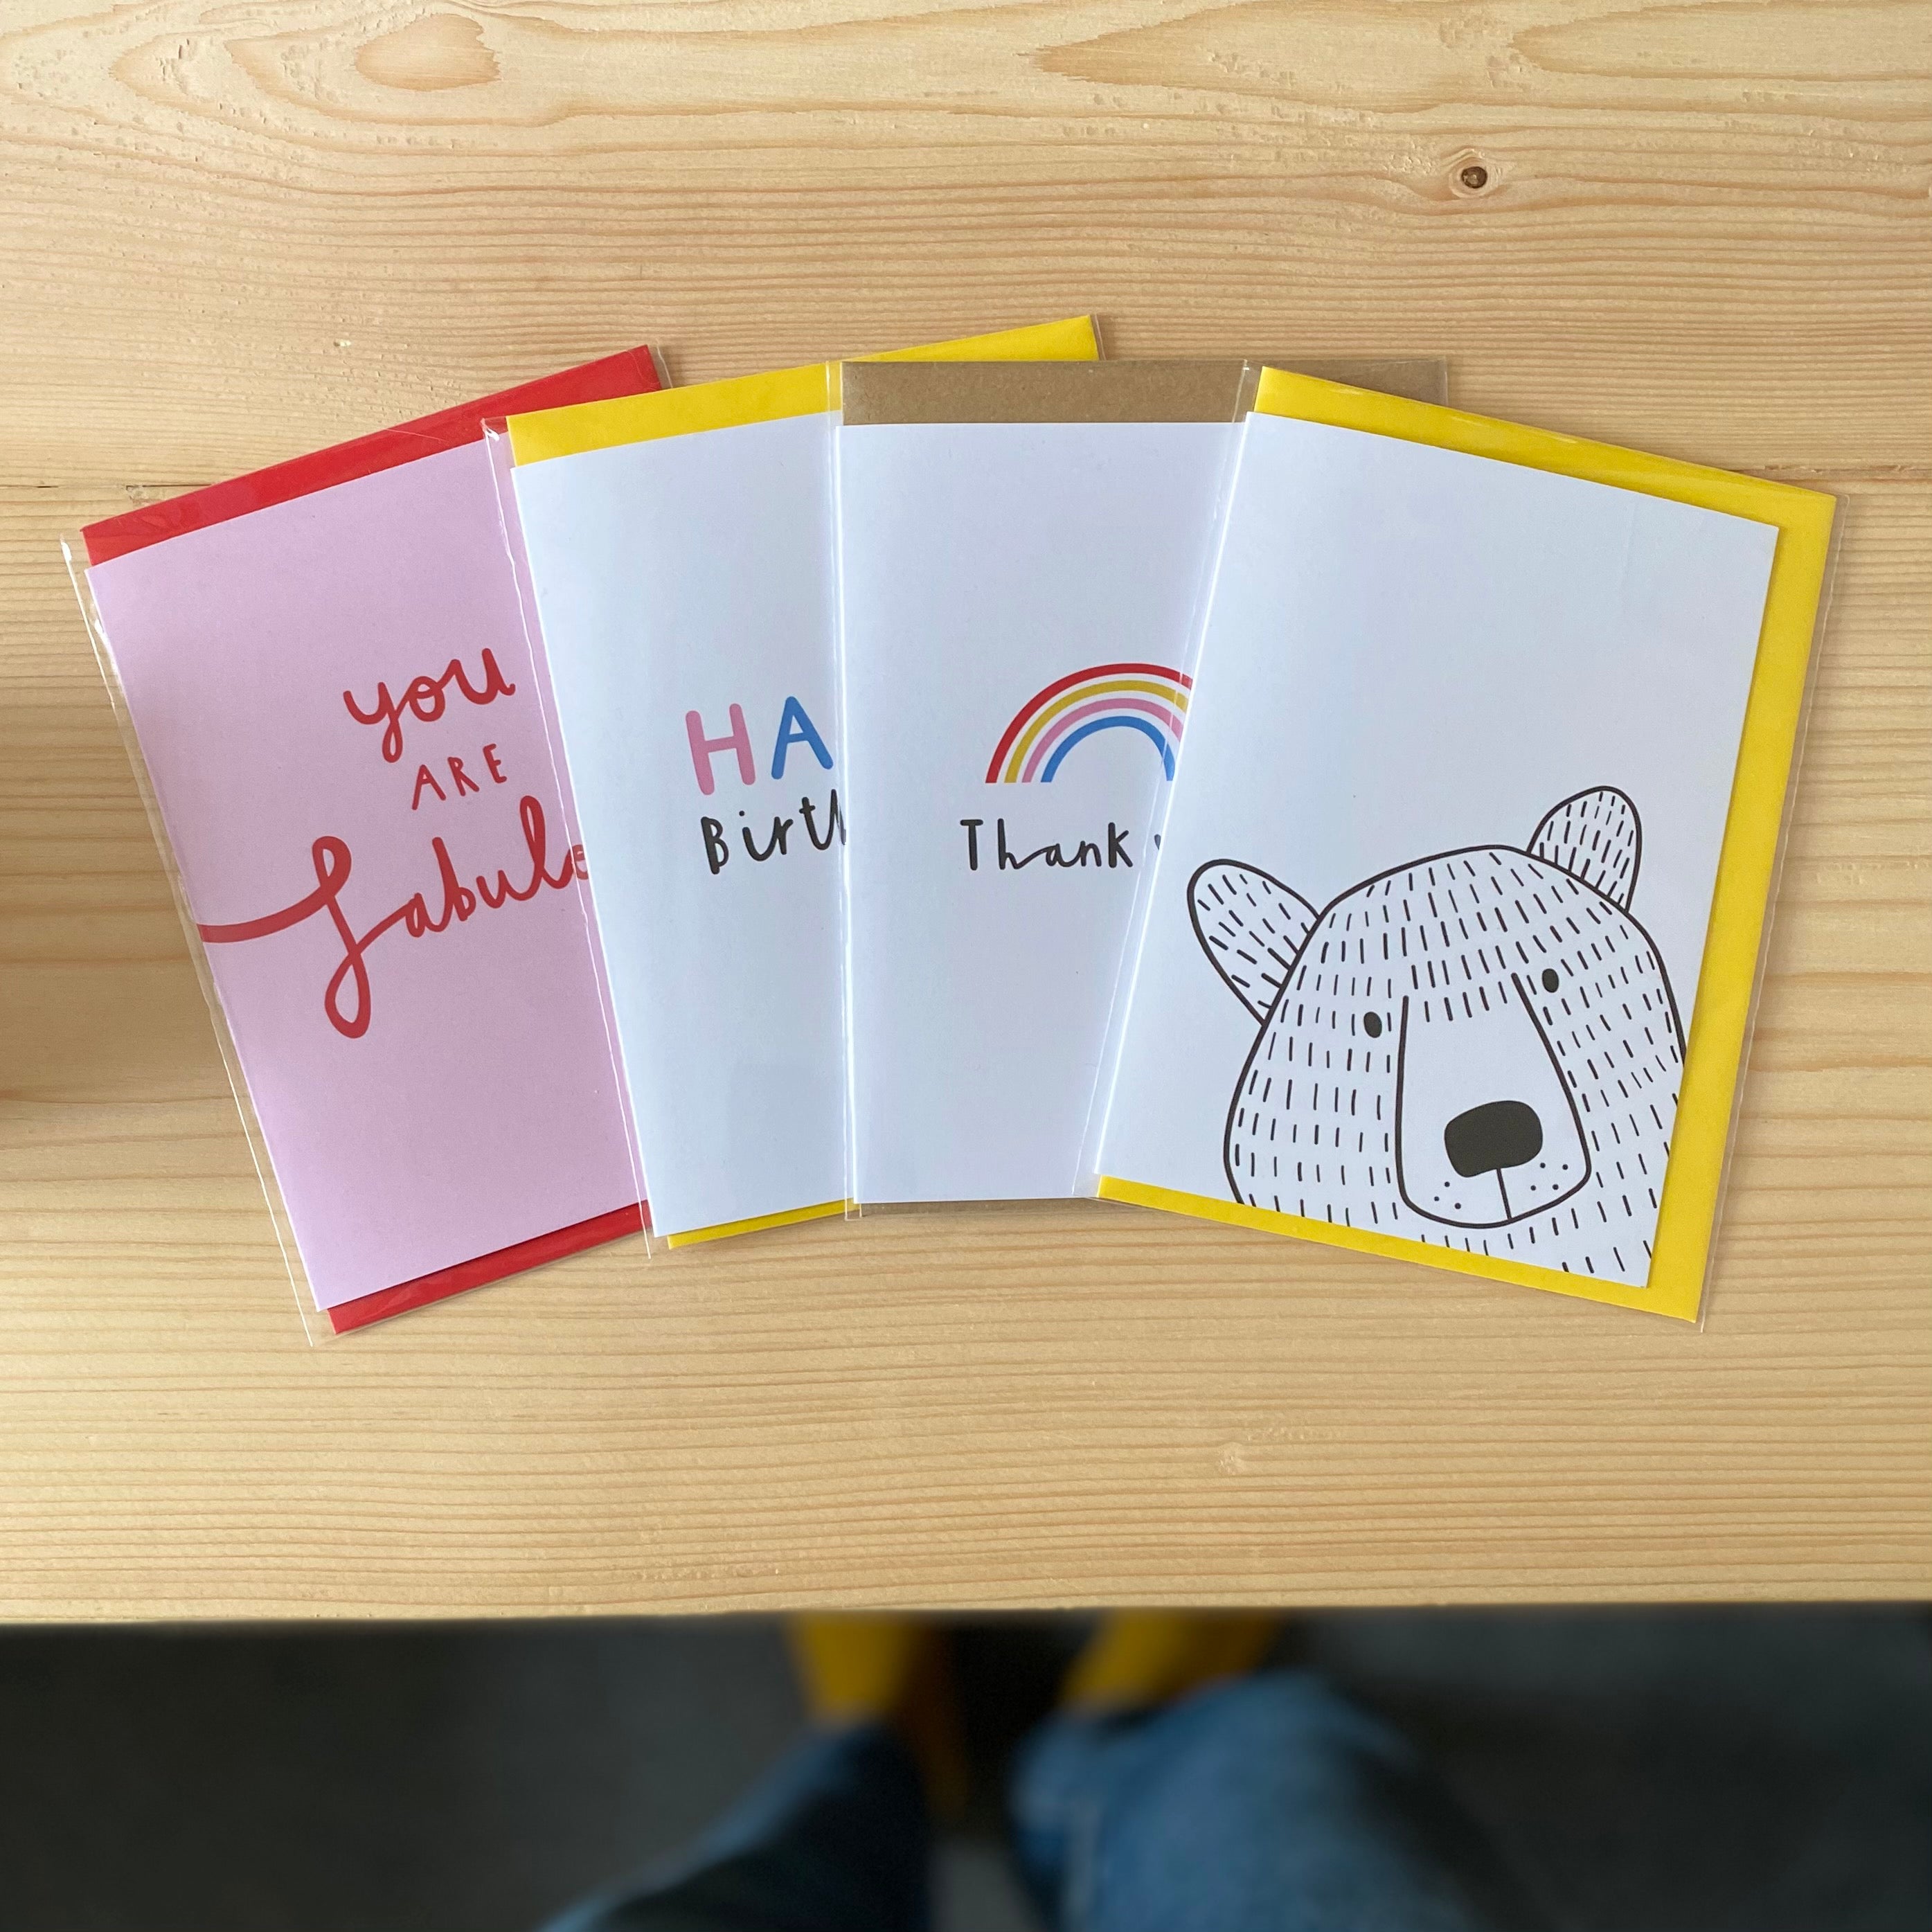 Mr Bear Peek-a-boo - A6 Greetings Card - Planet-friendly materials